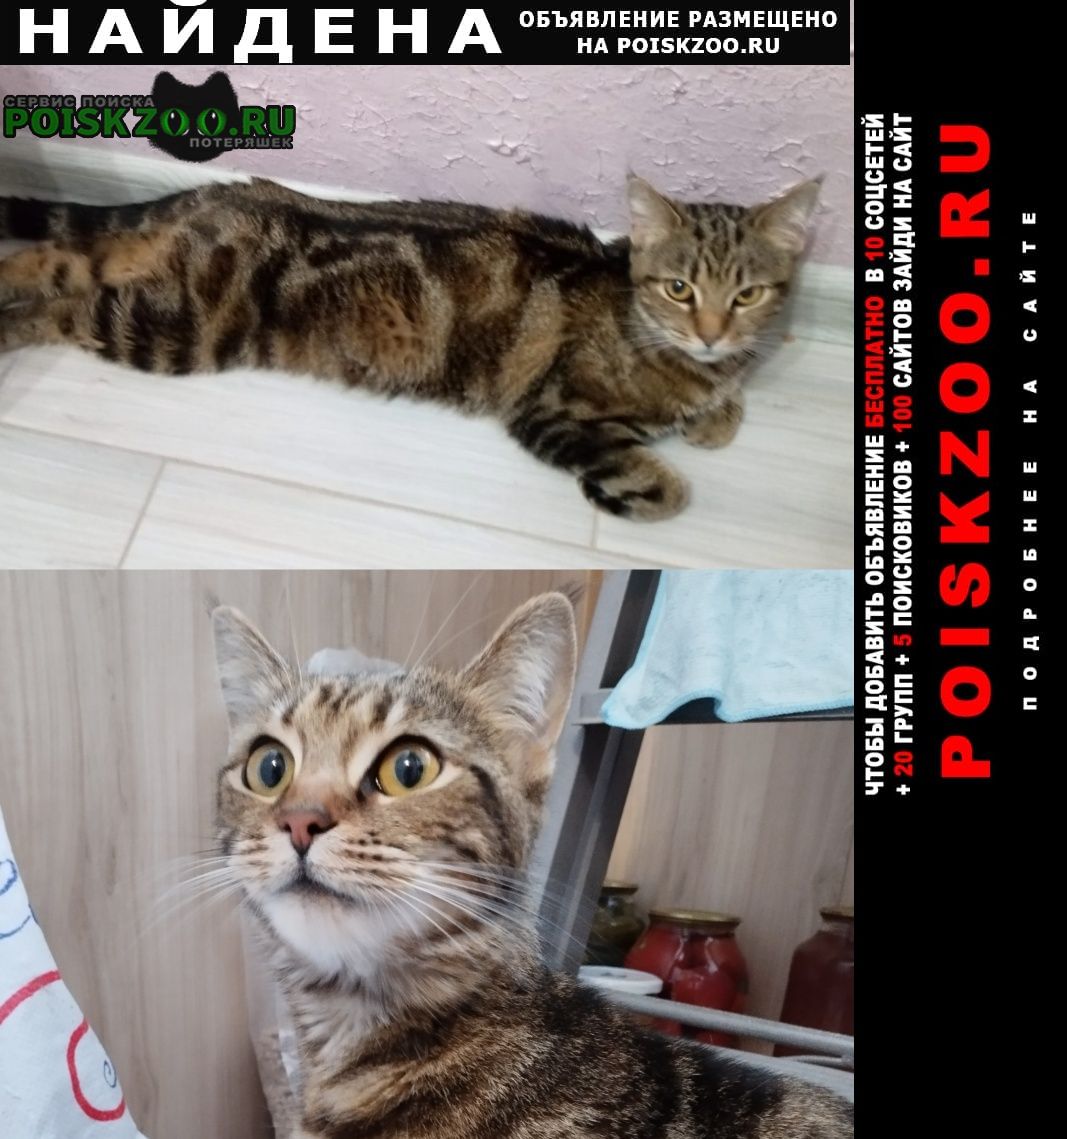 Ставрополь Найдена кошка